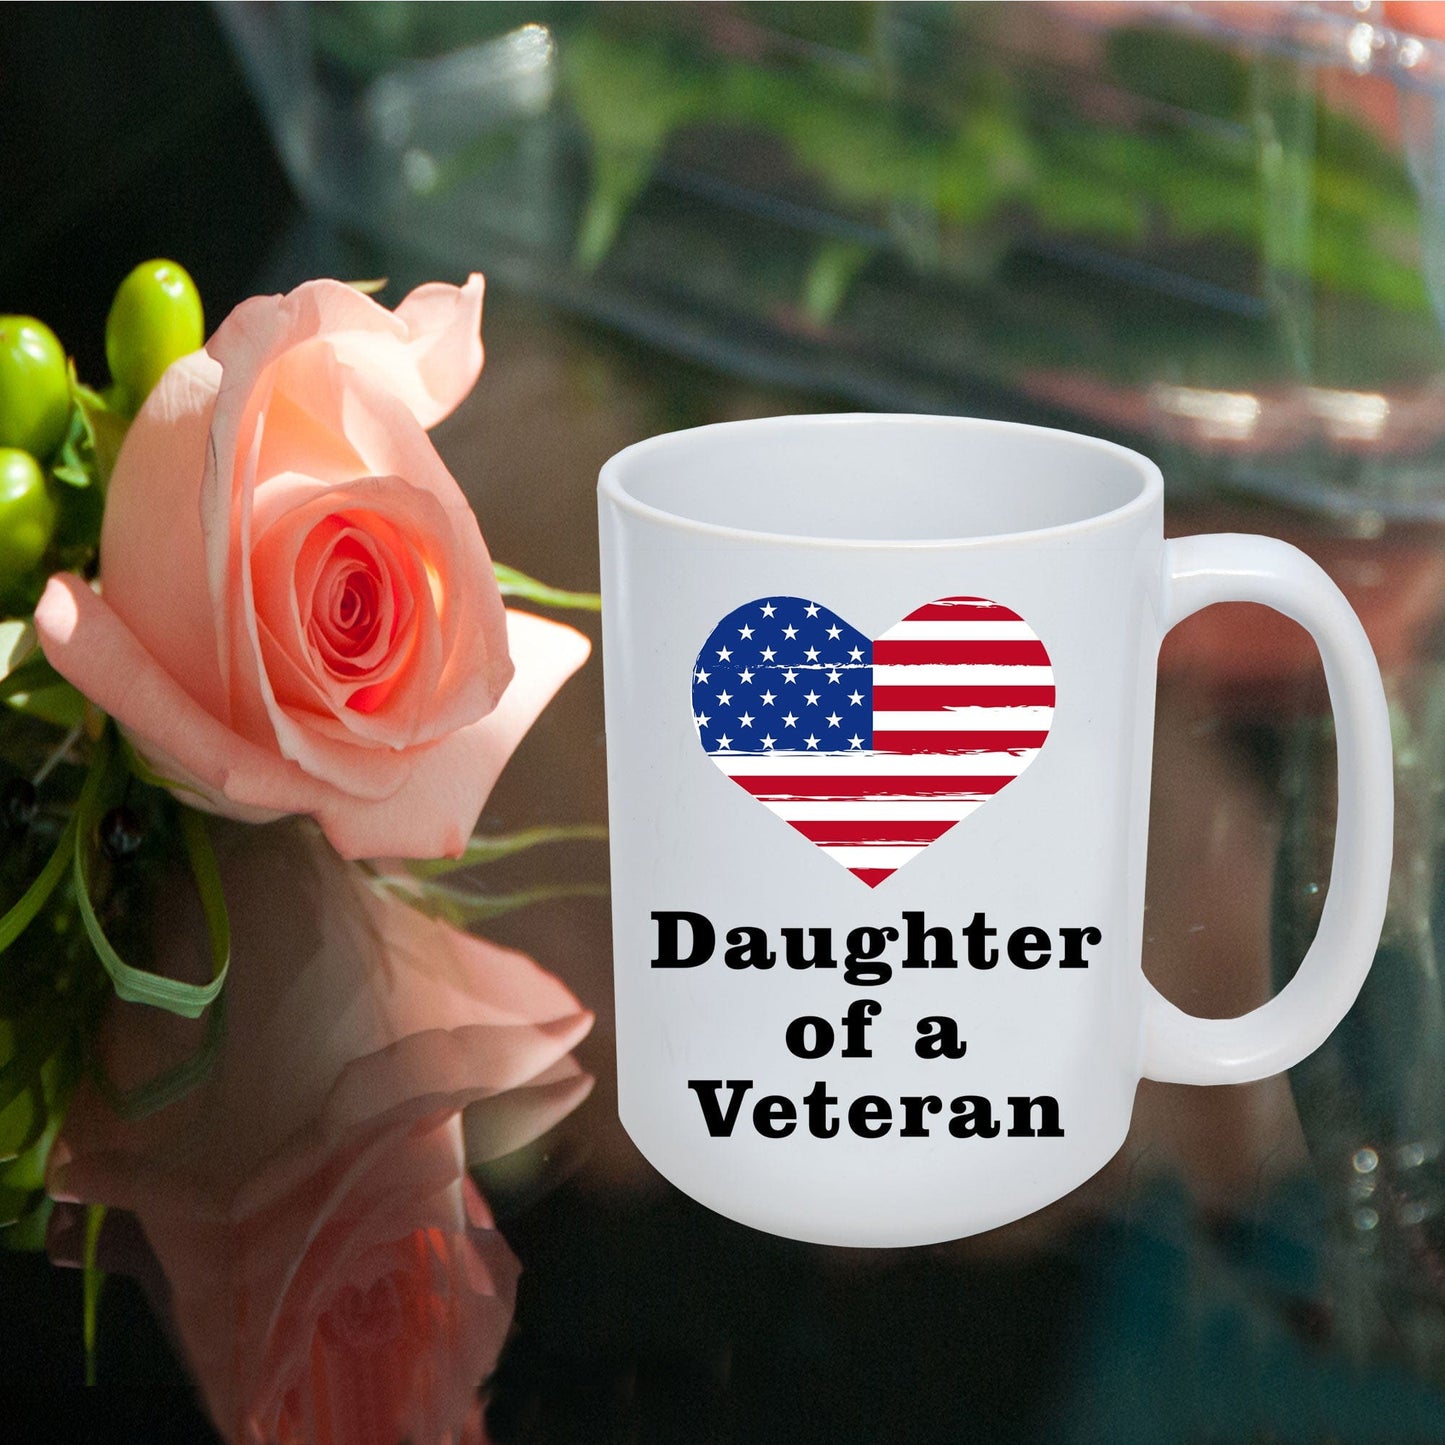 Daughter of a Veteran Coffee Mug